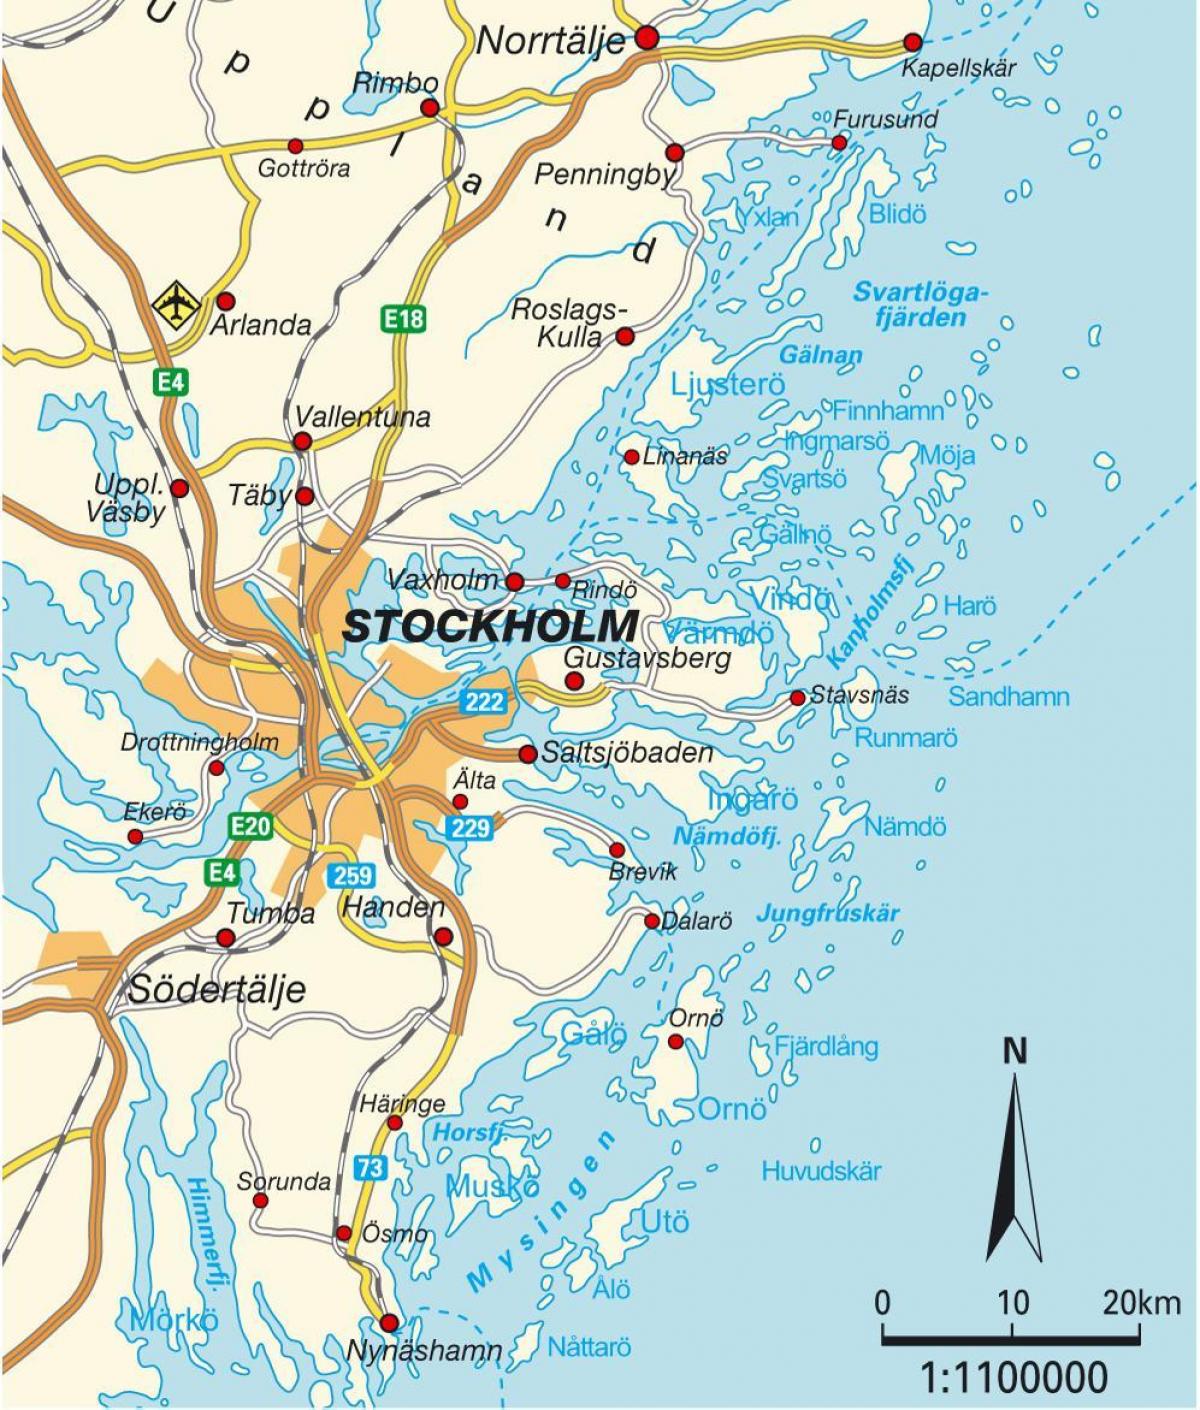 Stockholm pada peta